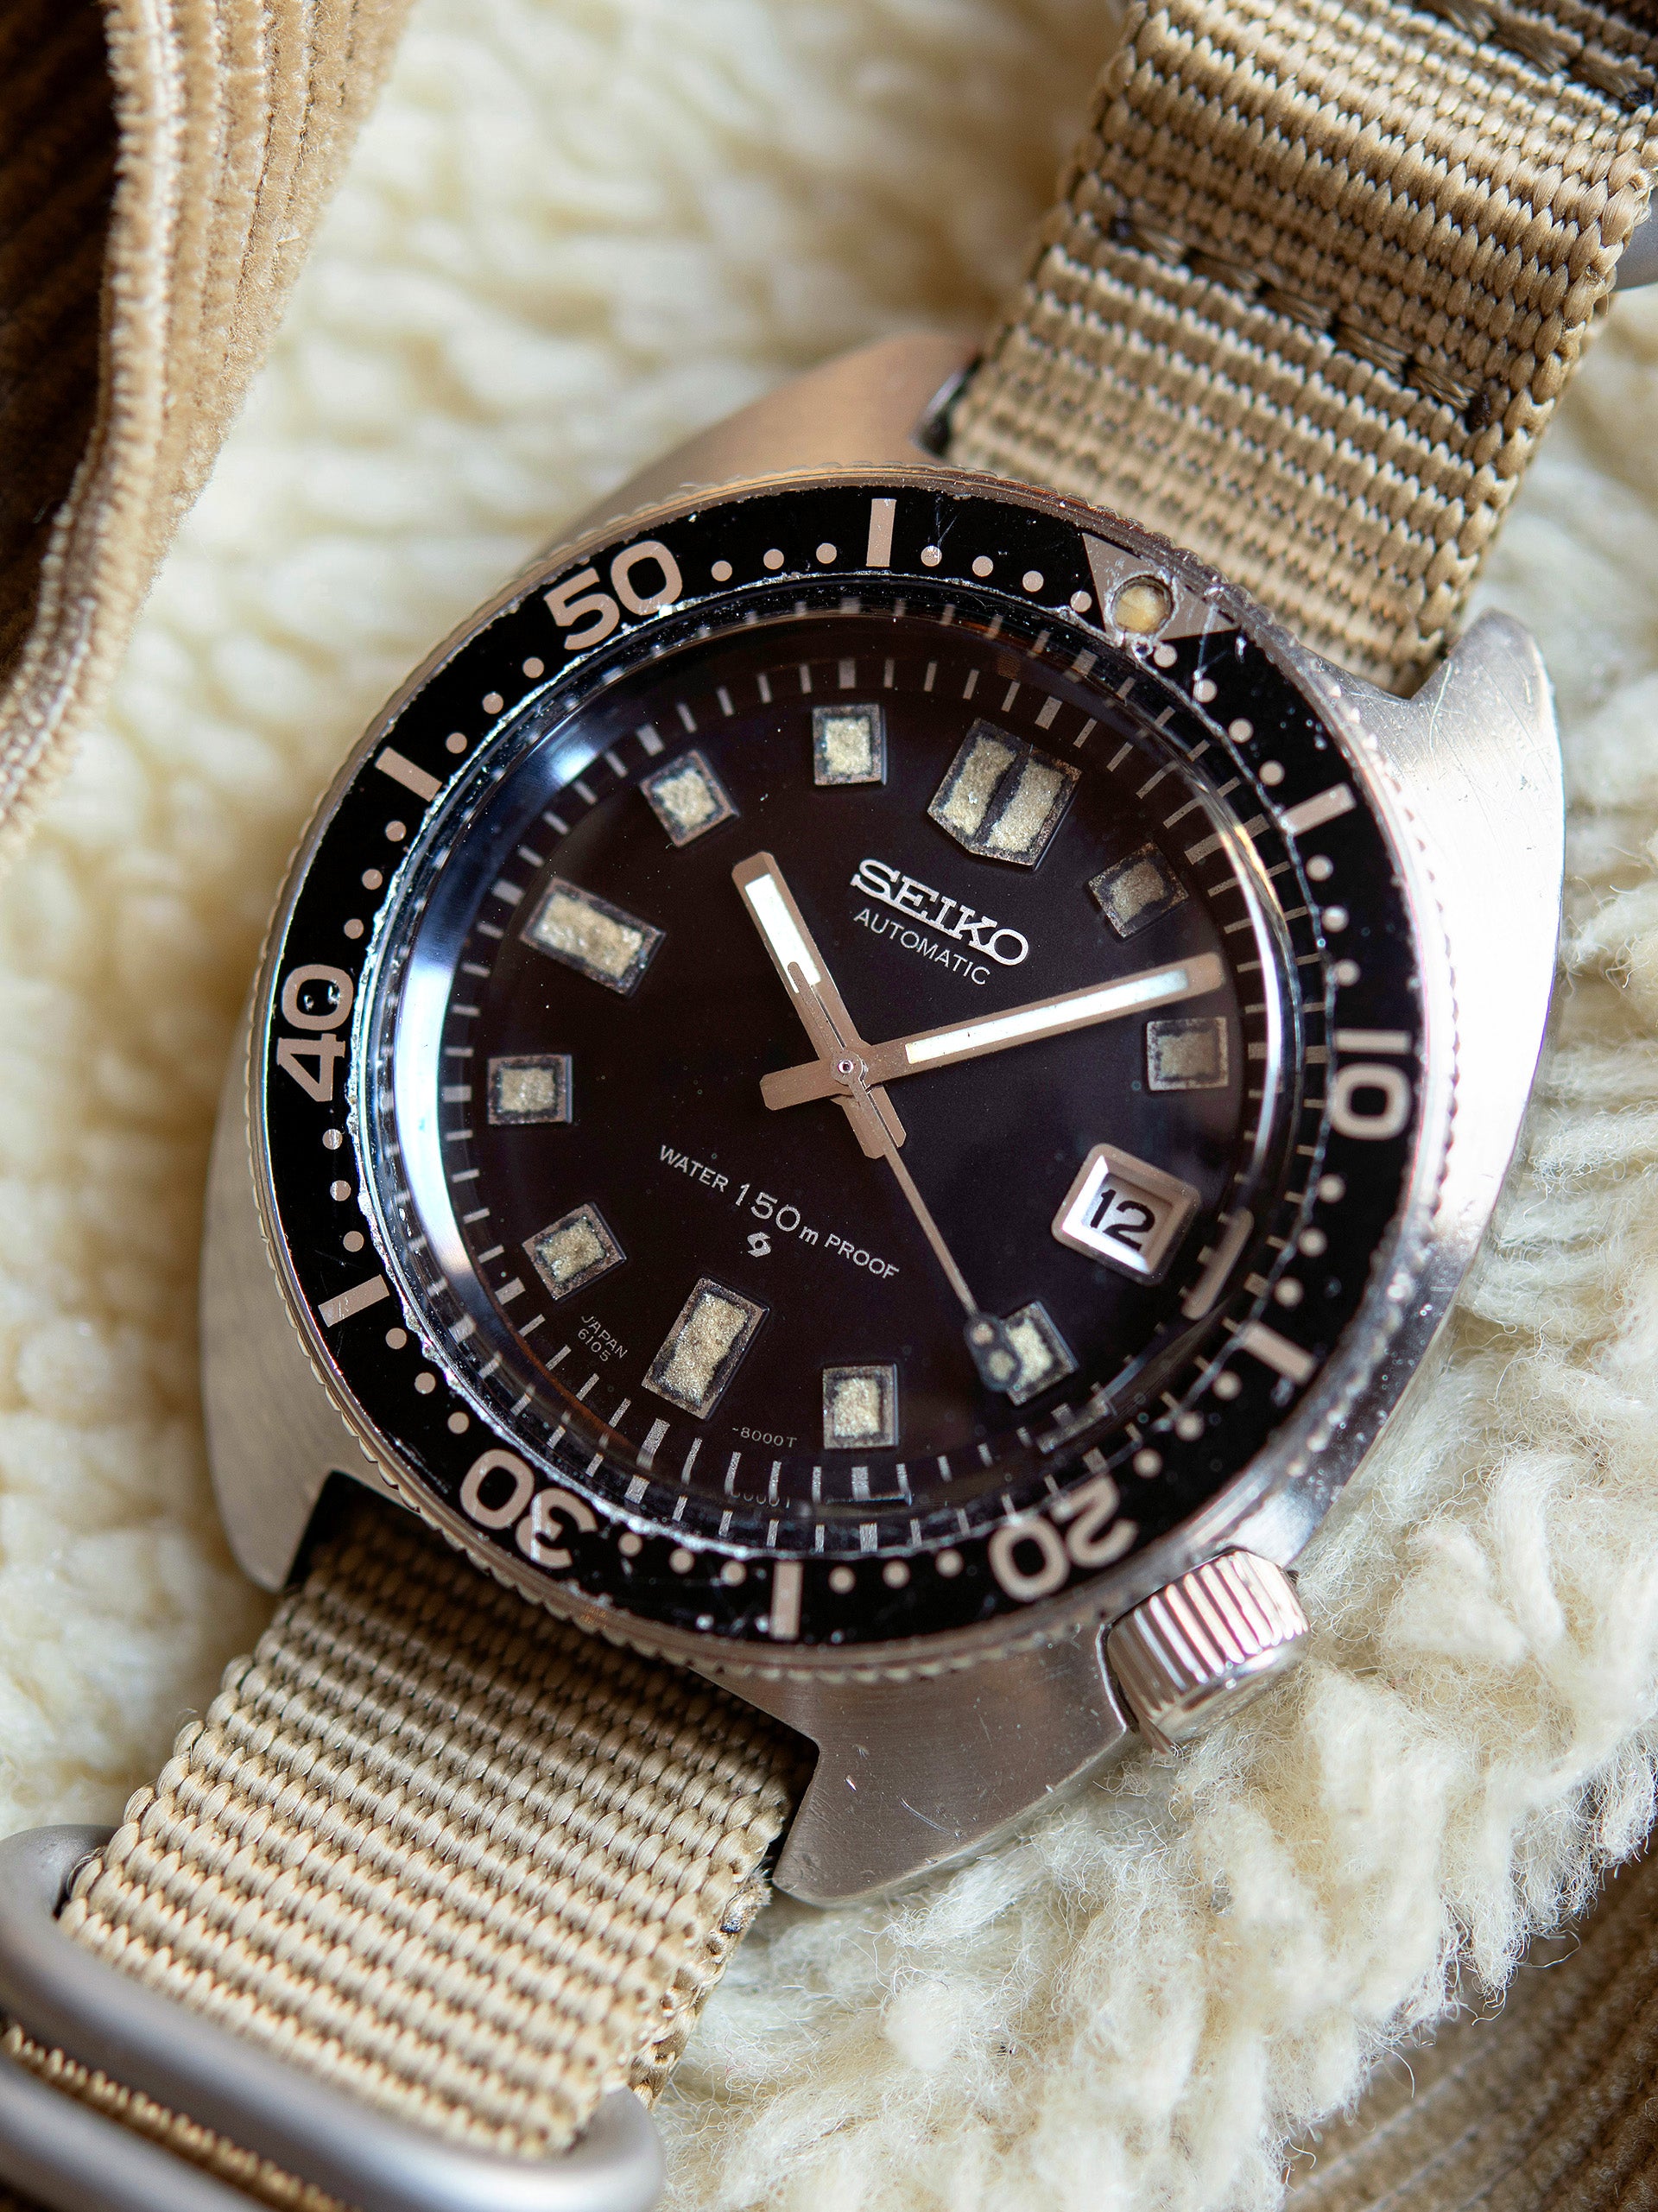 1969 Seiko Automatic Diver (Ref. 6105-8000) 